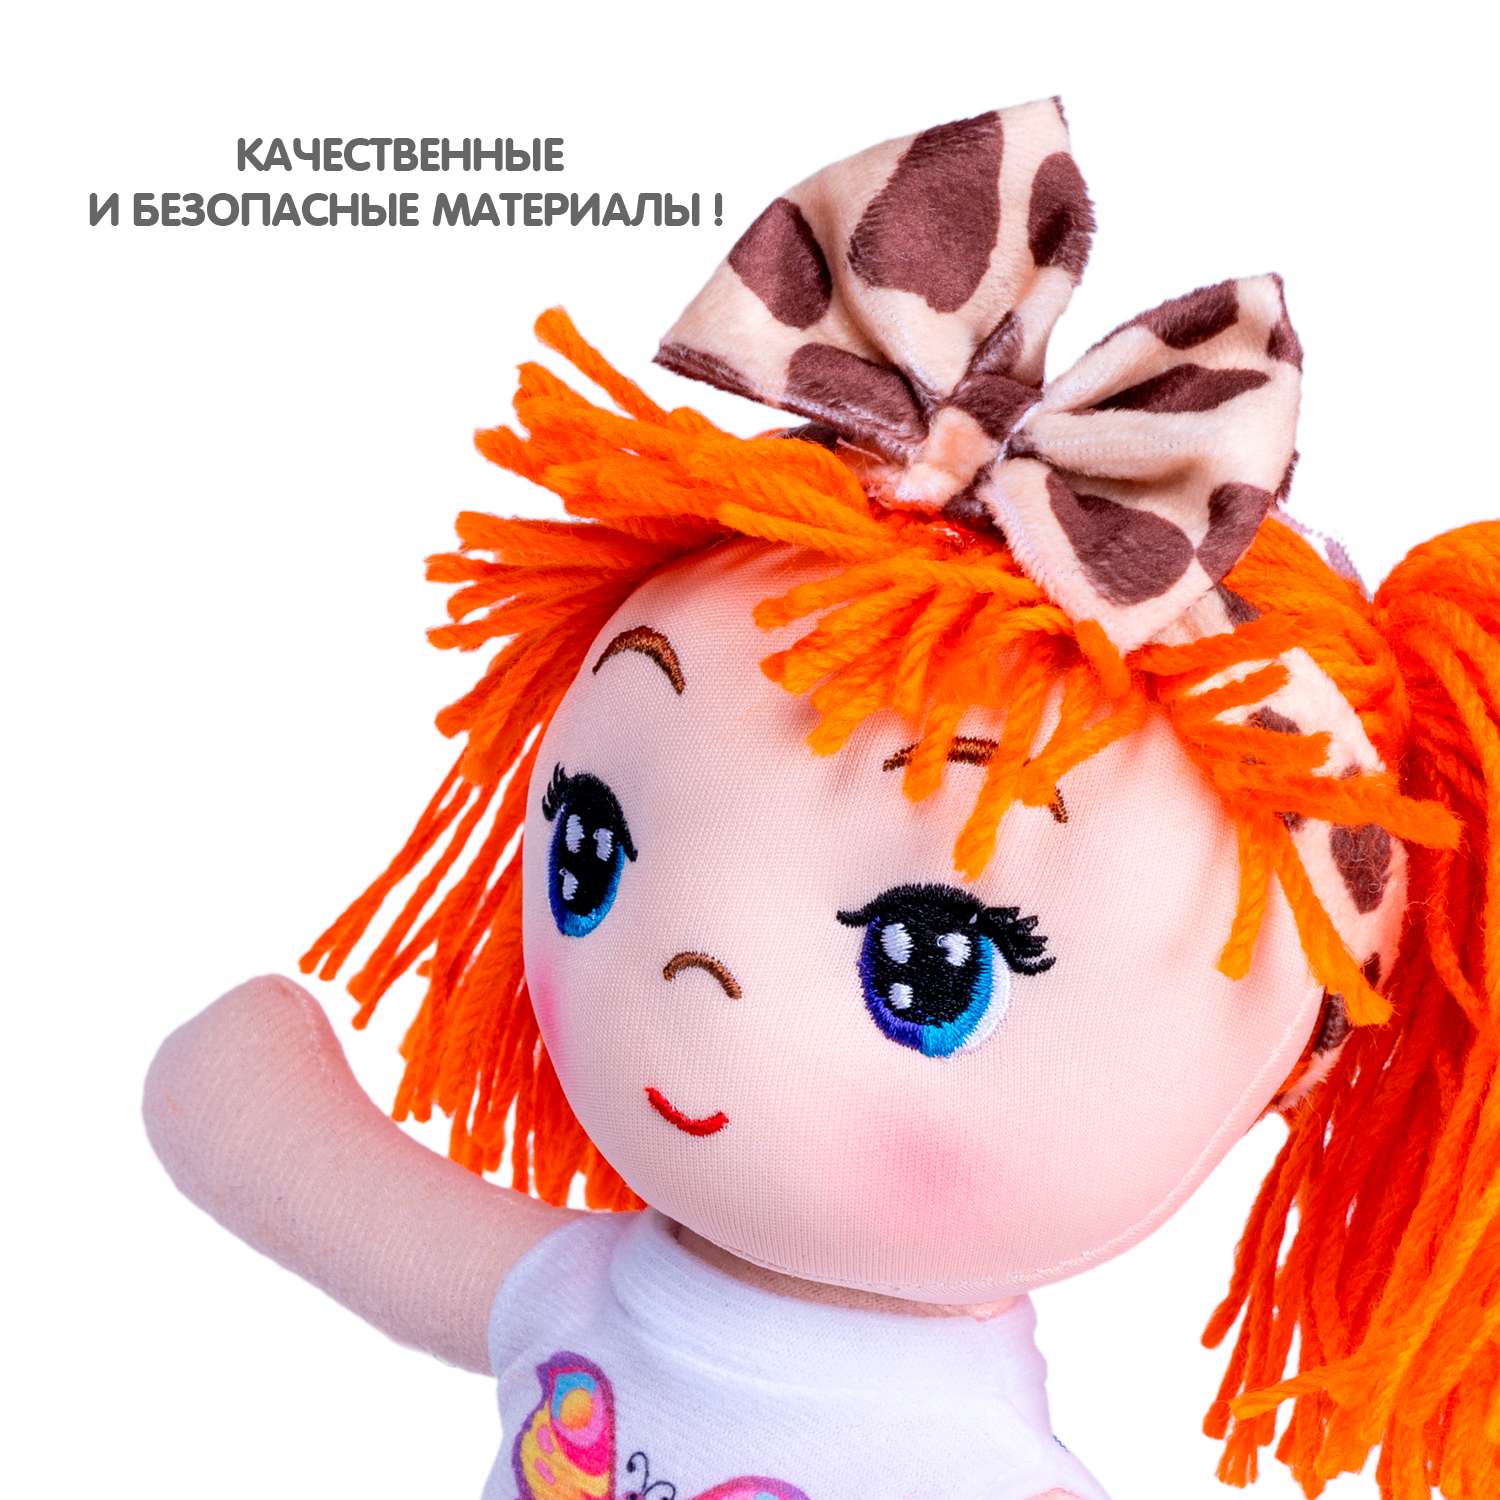 Кукла мягкая BONDIBON Кира 26 см оранжевые волосы ВВ5515 - фото 12